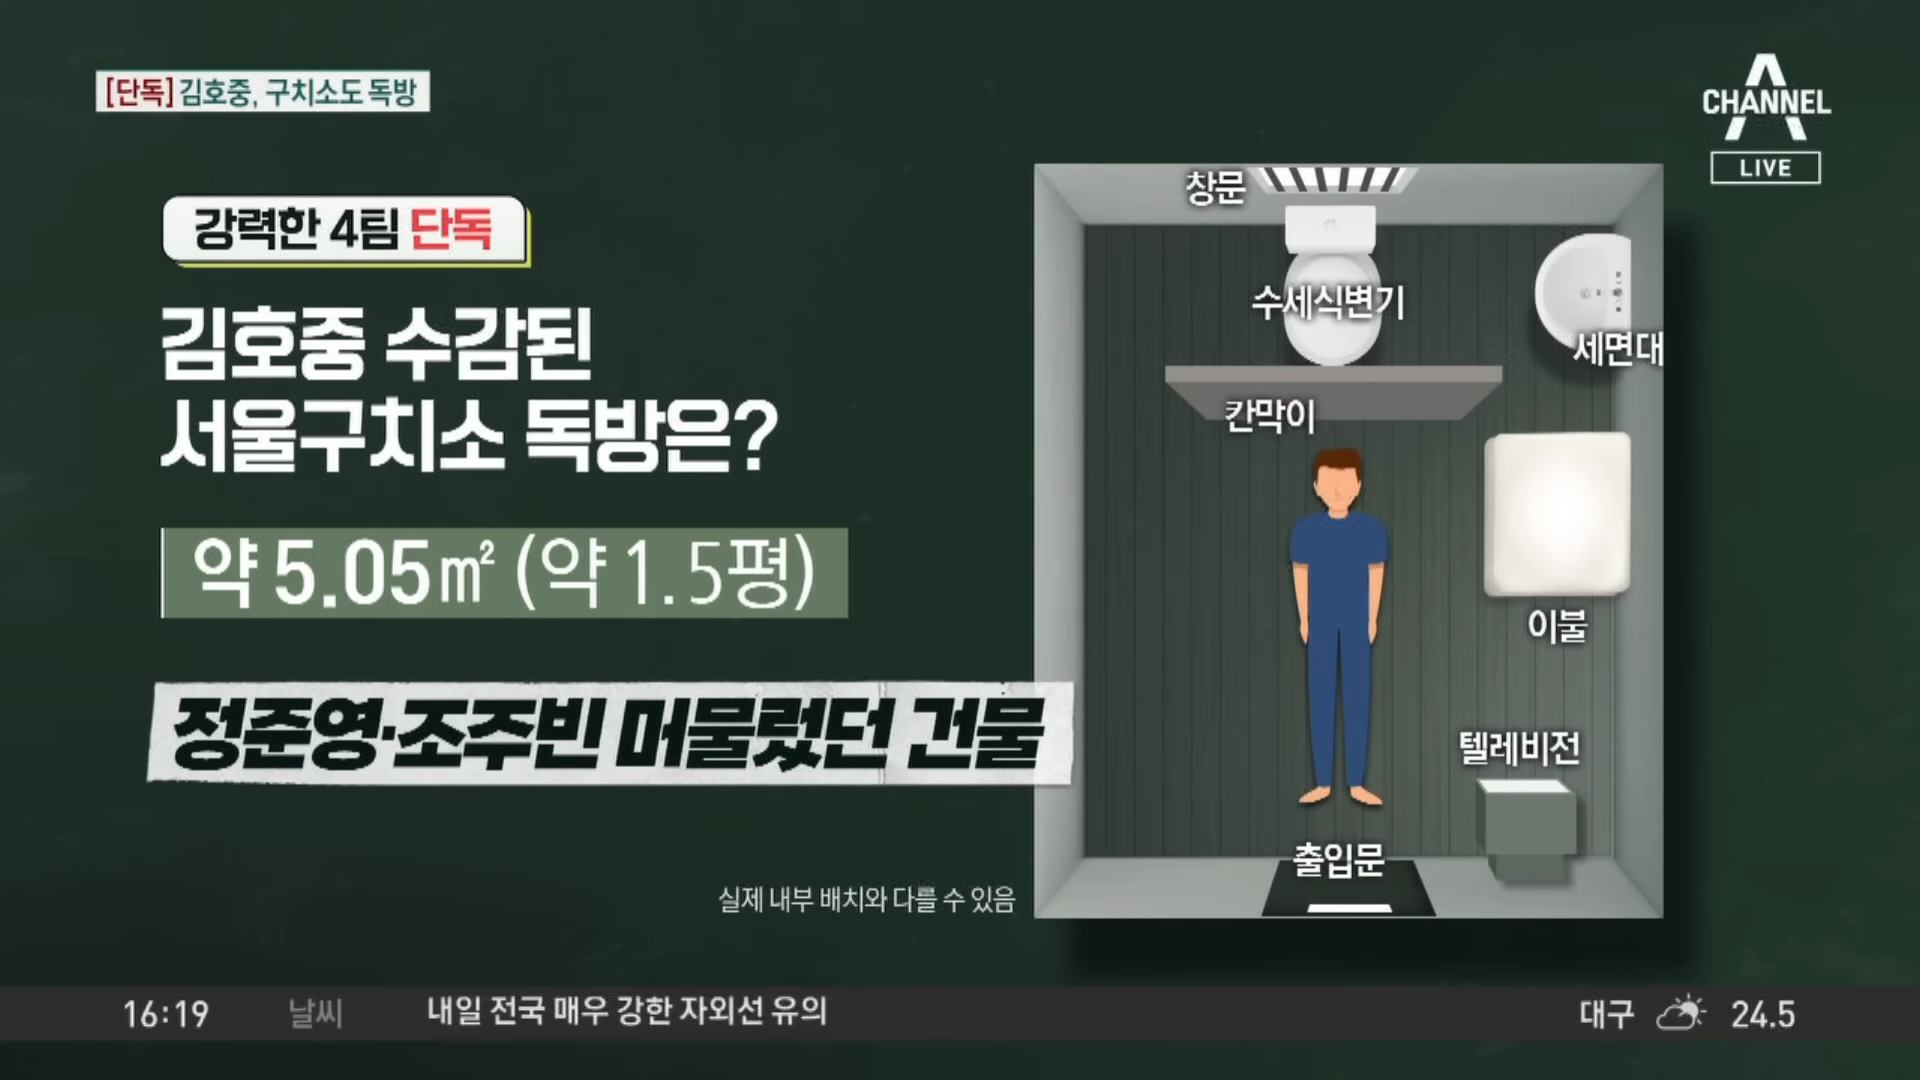 ‘음주 뺑소니’ 혐의로 구속된 트로트 가수 김호중(33)씨가 서울구치소에 이감된 뒤 독방을 배정받은 것으로 알려졌다. 채널A